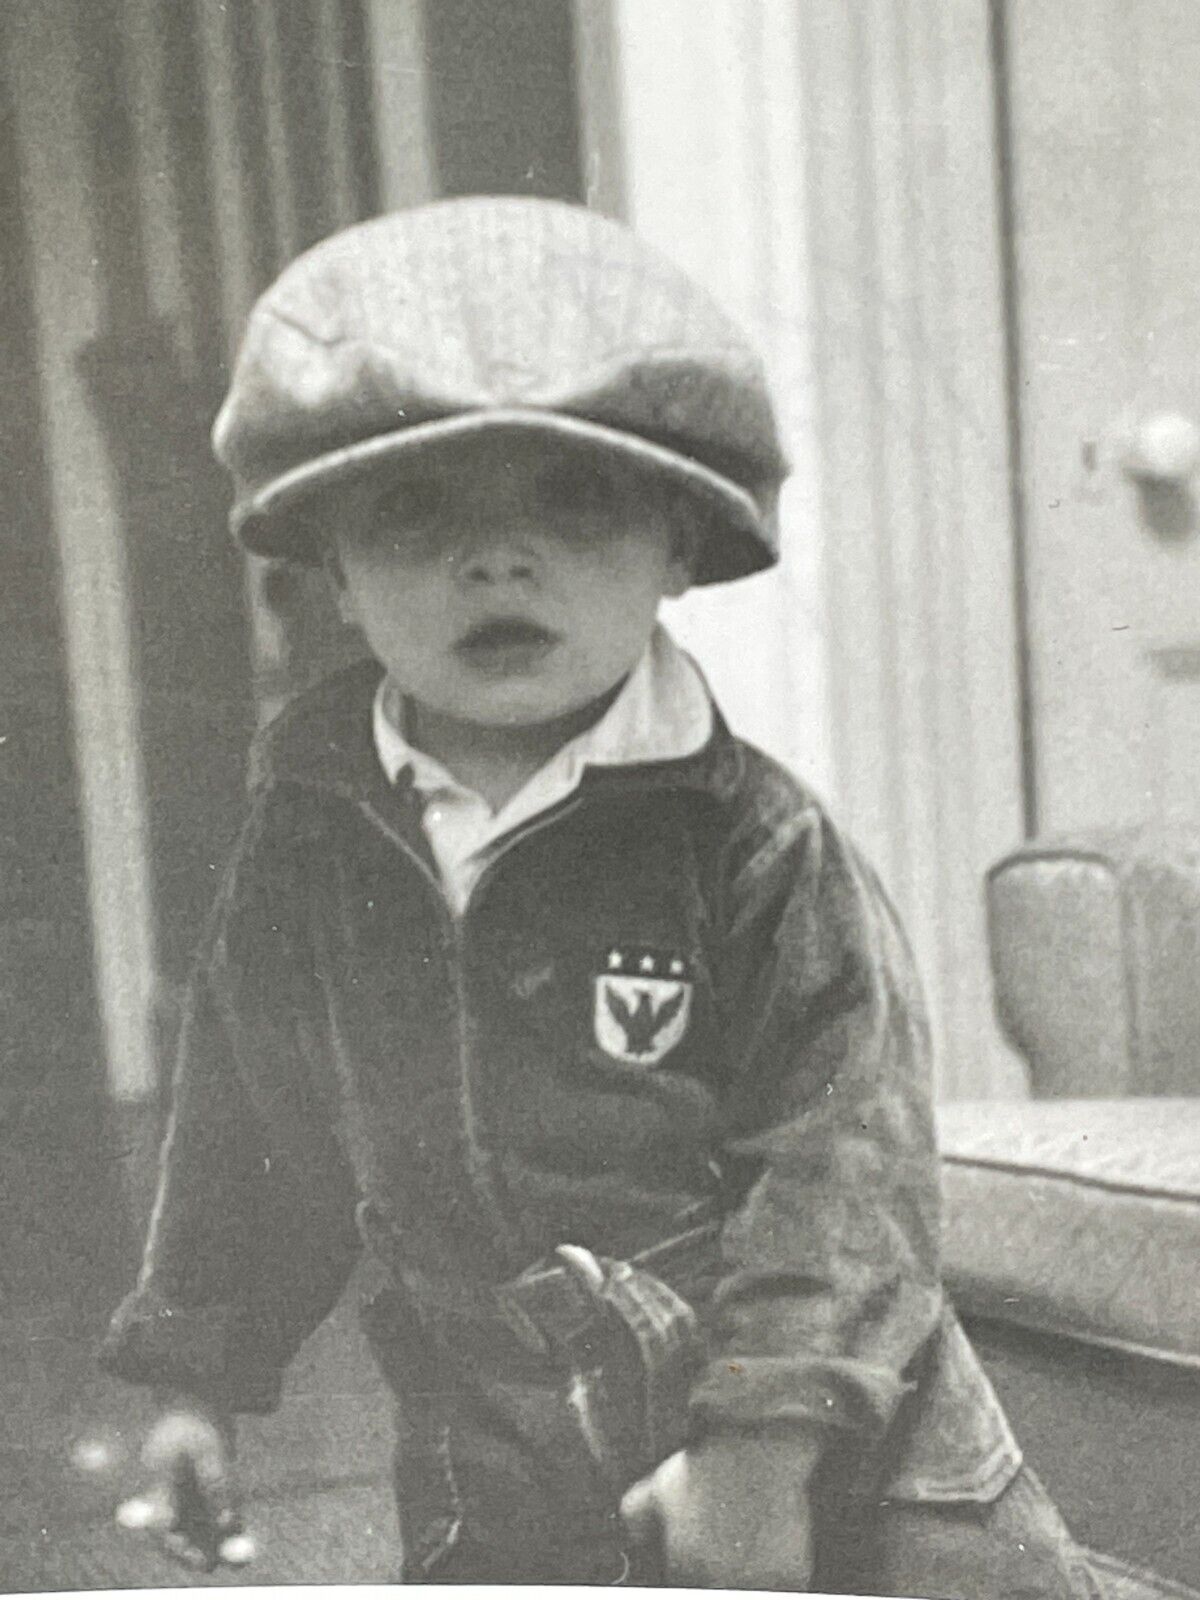 NF Photograph Boy Portrait 1950's